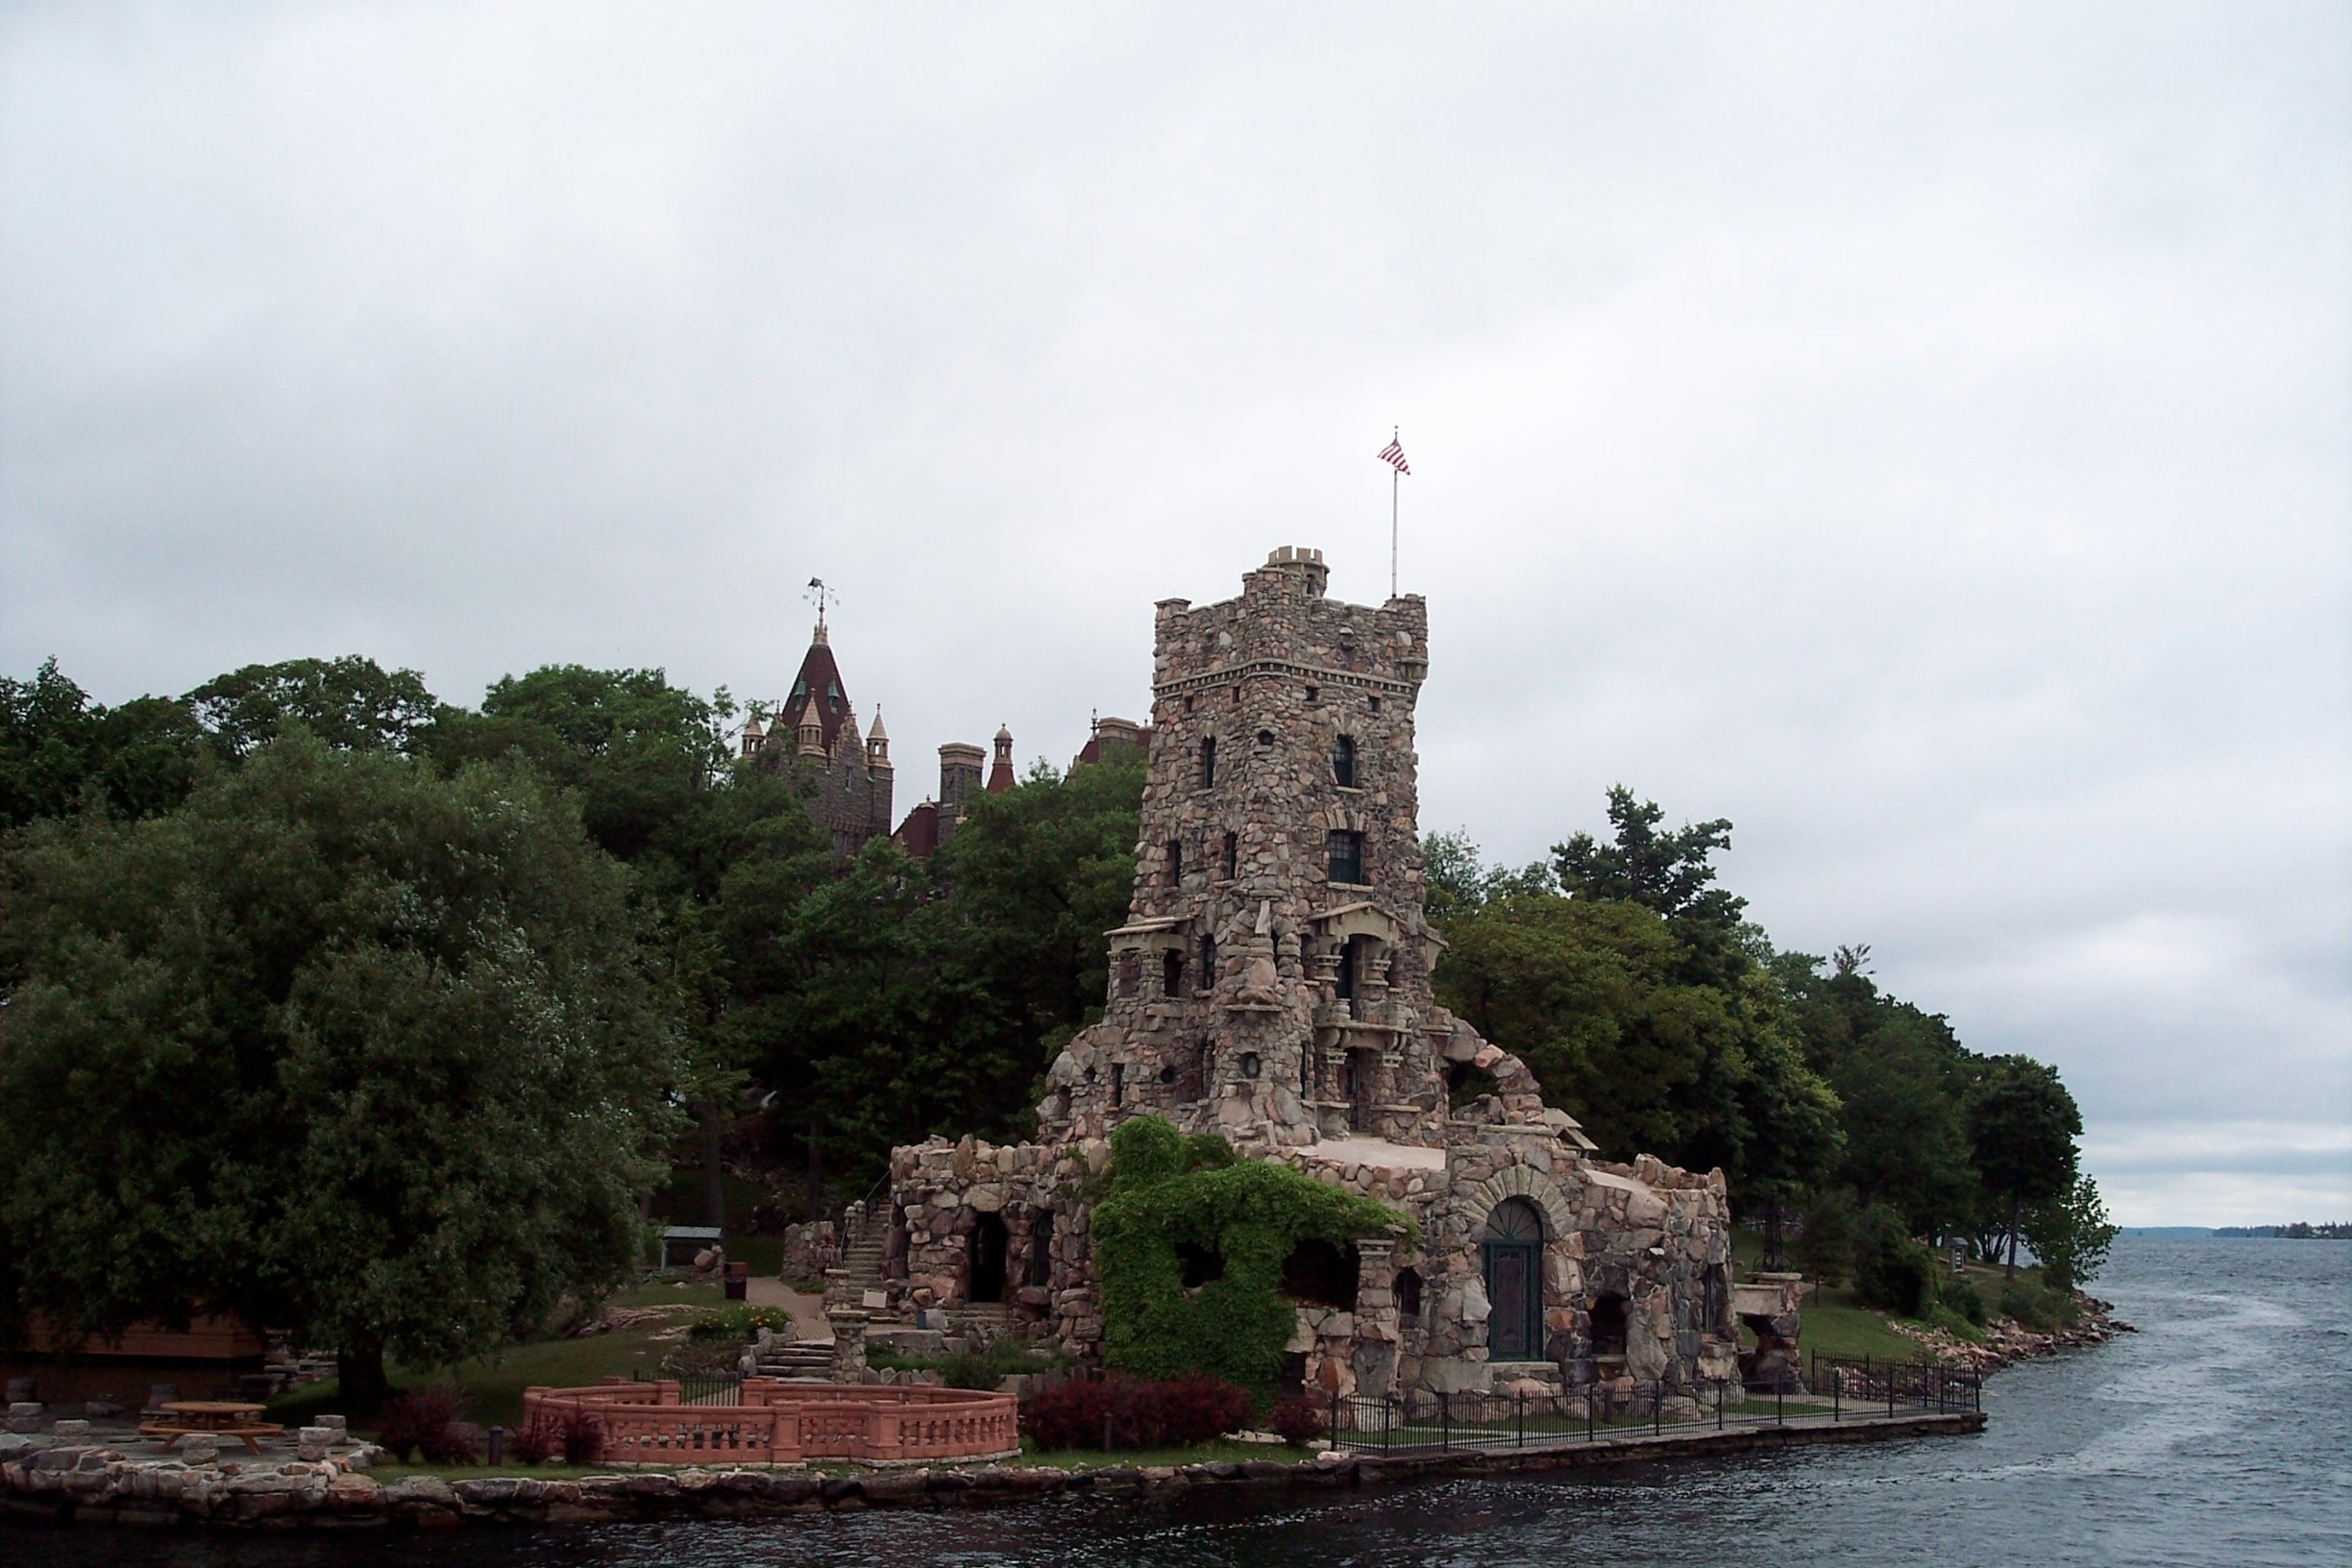 boldt castle tour alexandria bay